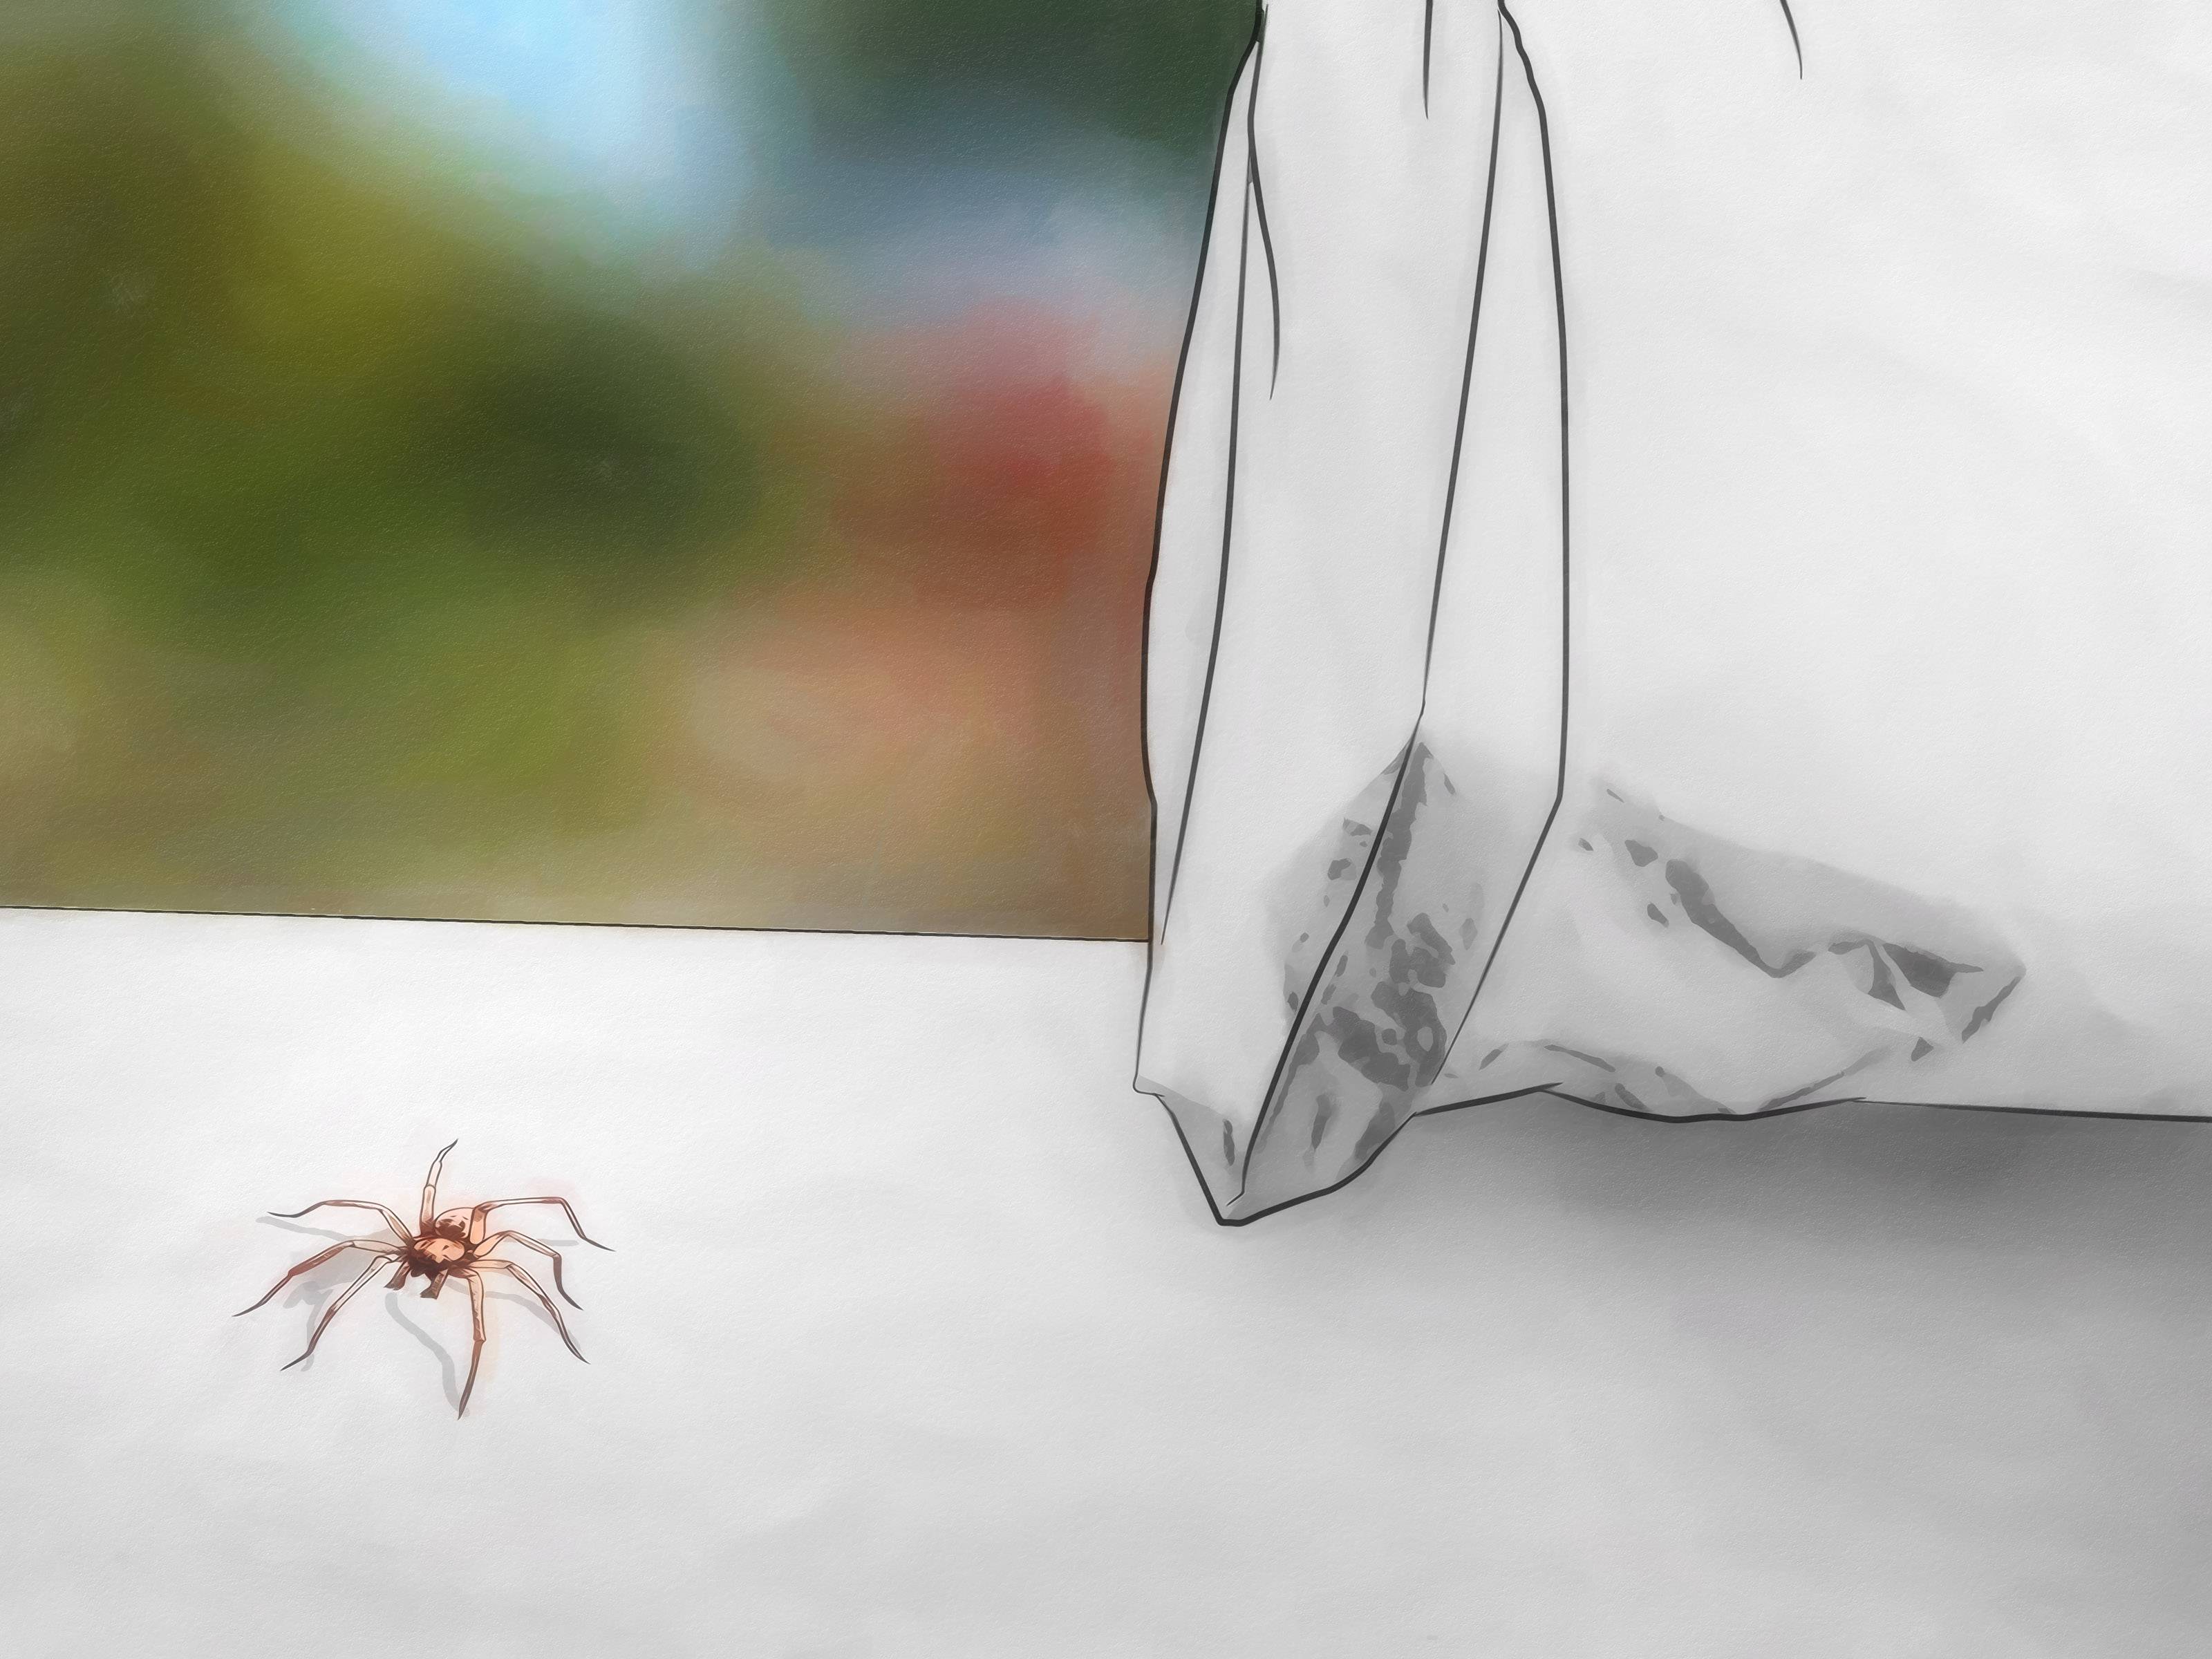 Как избавиться в доме от пауков доступными средствами – 11 способов